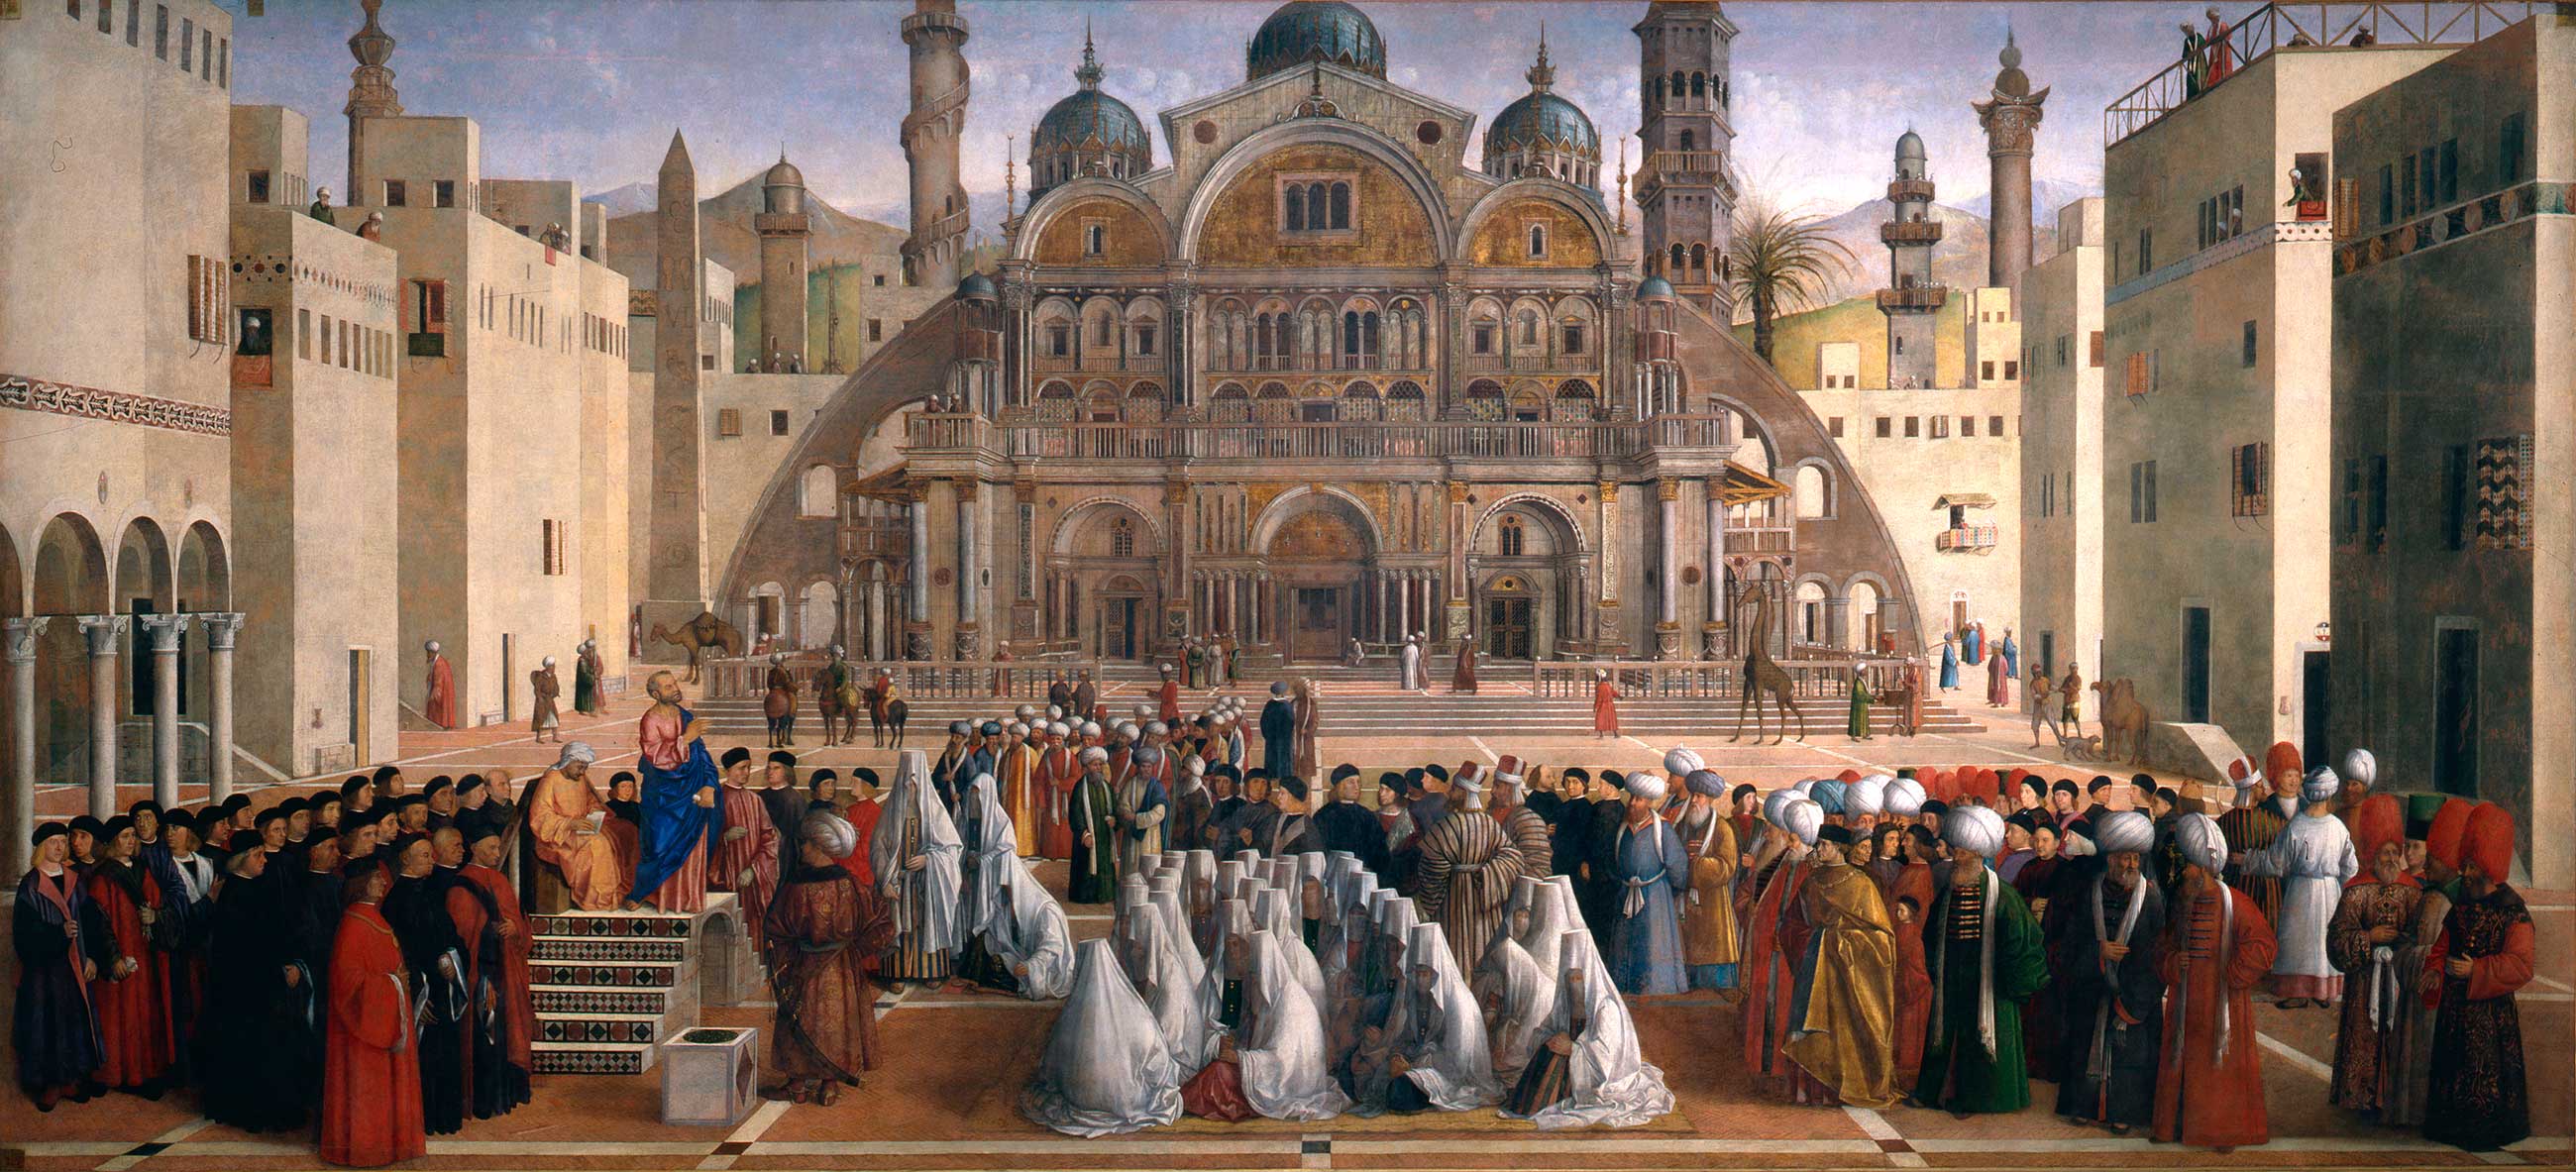 Sermón de San Marcos en Alejandría by Gentile y Giovanni Bellini - 1504-07 - 347 × 770 cm Pinacoteca di Brera